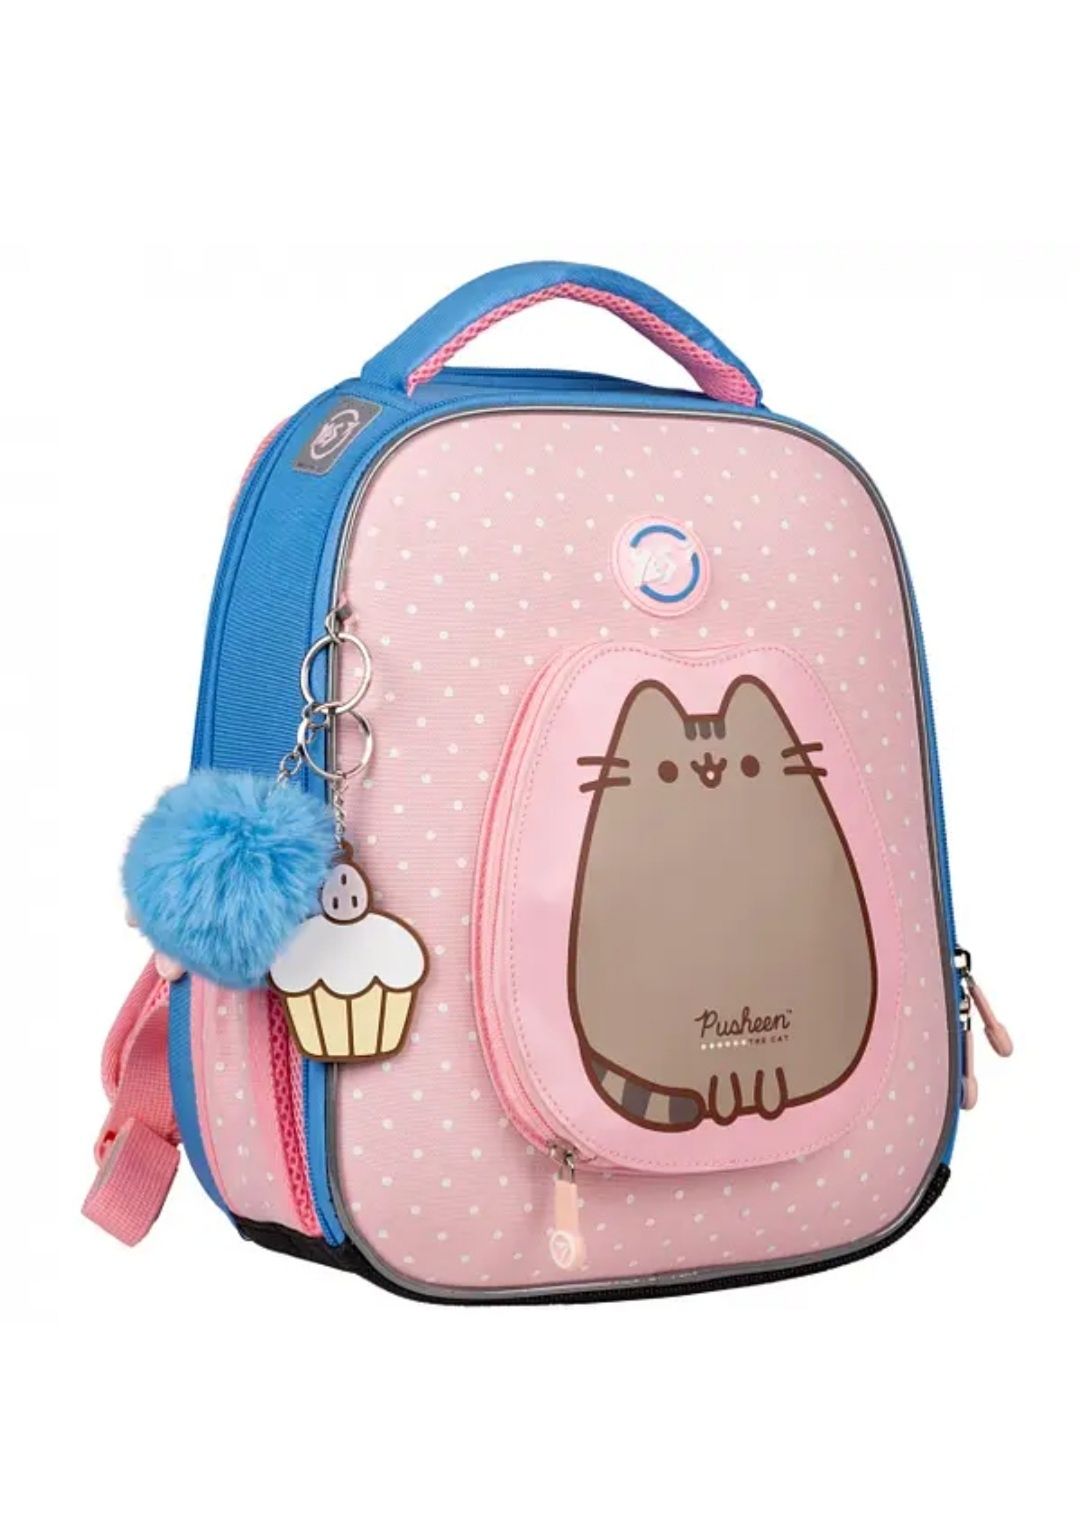 Шкільний рюкзак YES, рюкзак для школи якісний рюкзак (559548)